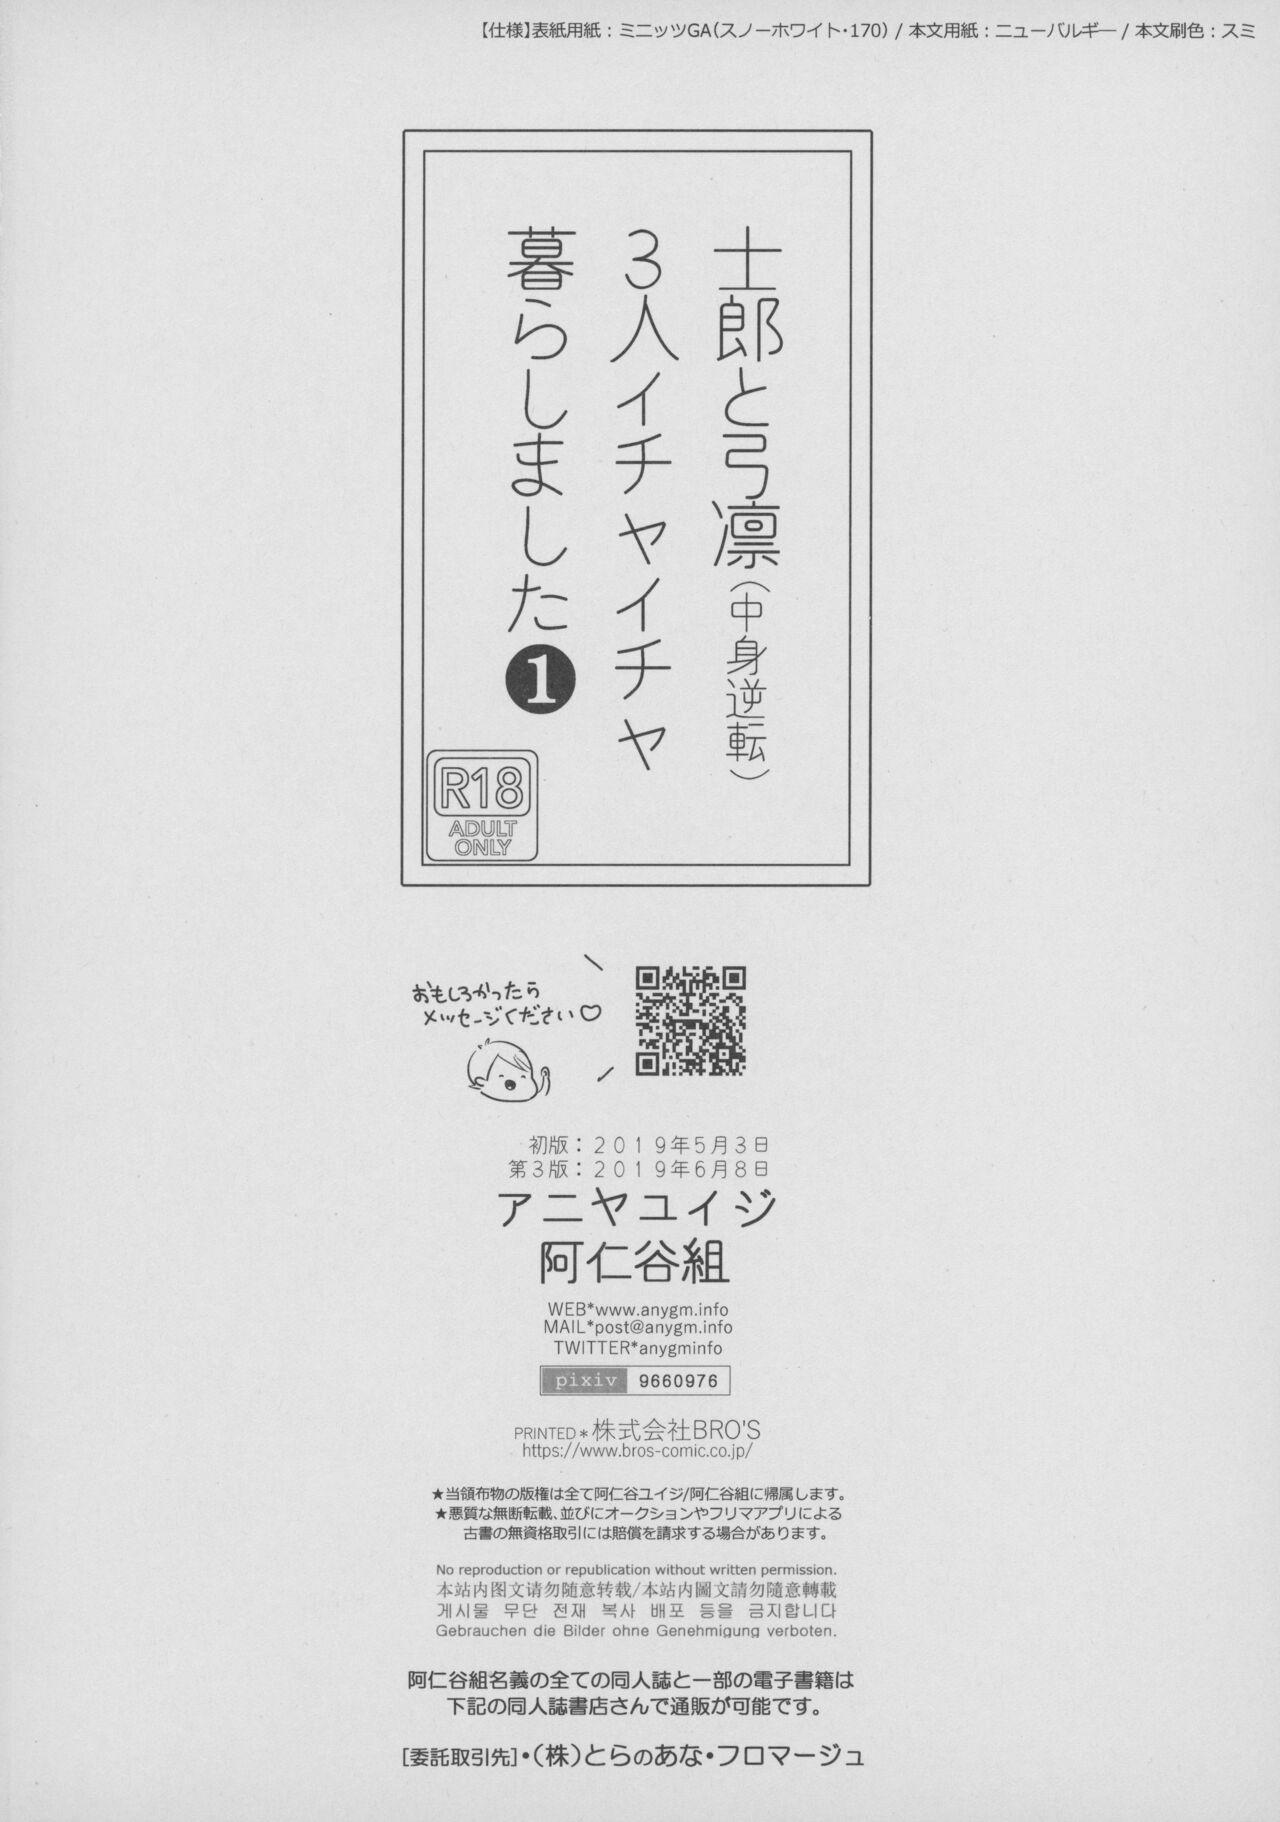 [Aniyagumi (Aniya Yuiji)] Shirou to Yumi Rin (Nakami Gyakuten) 3-nin Ichaicha Kurashimashita 1 (Fate/stay night) [2019-06-08] 36